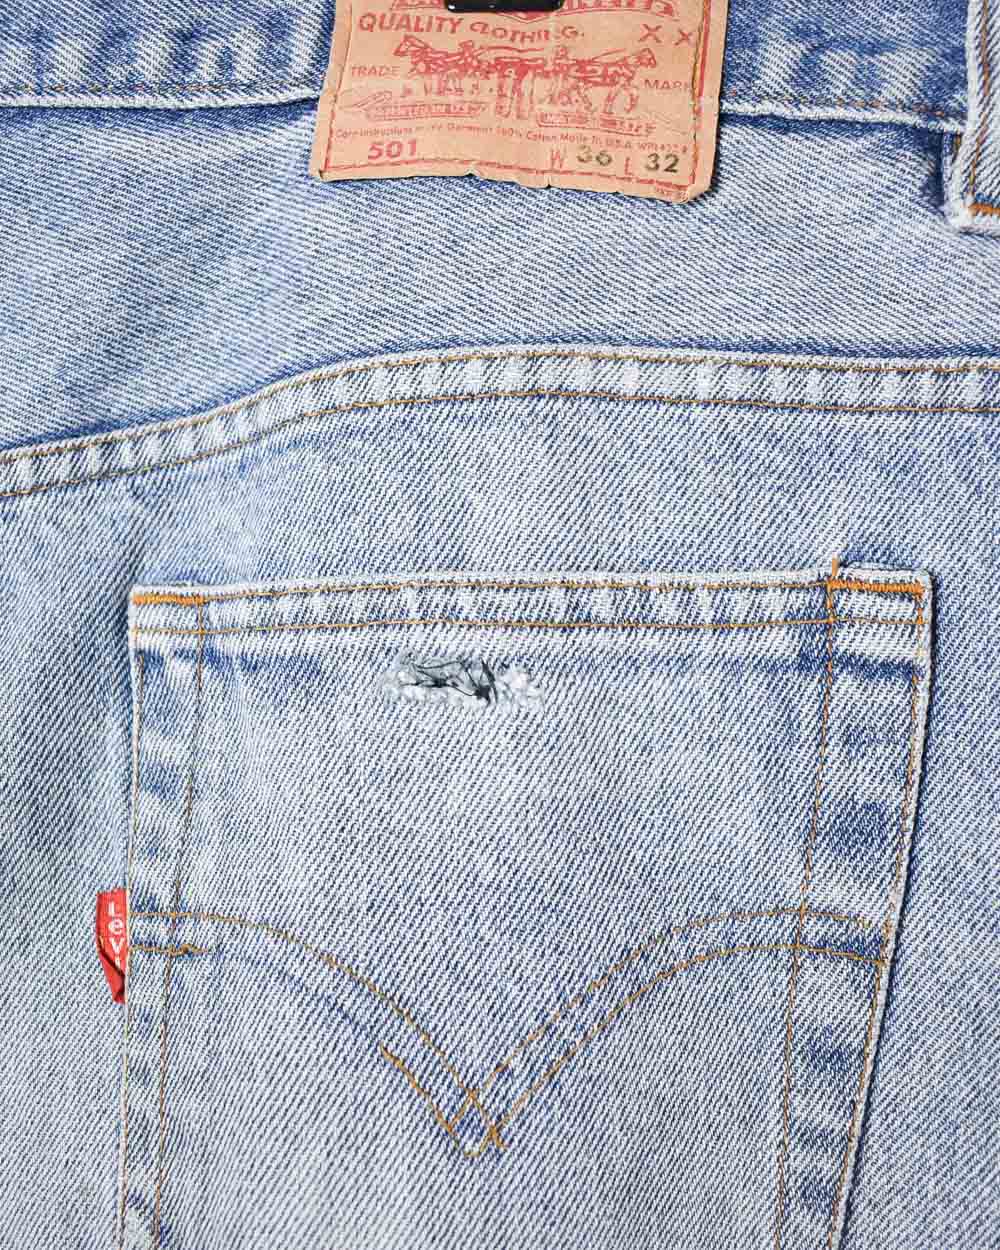 Blue Levi's 501 Jeans - W38 L27